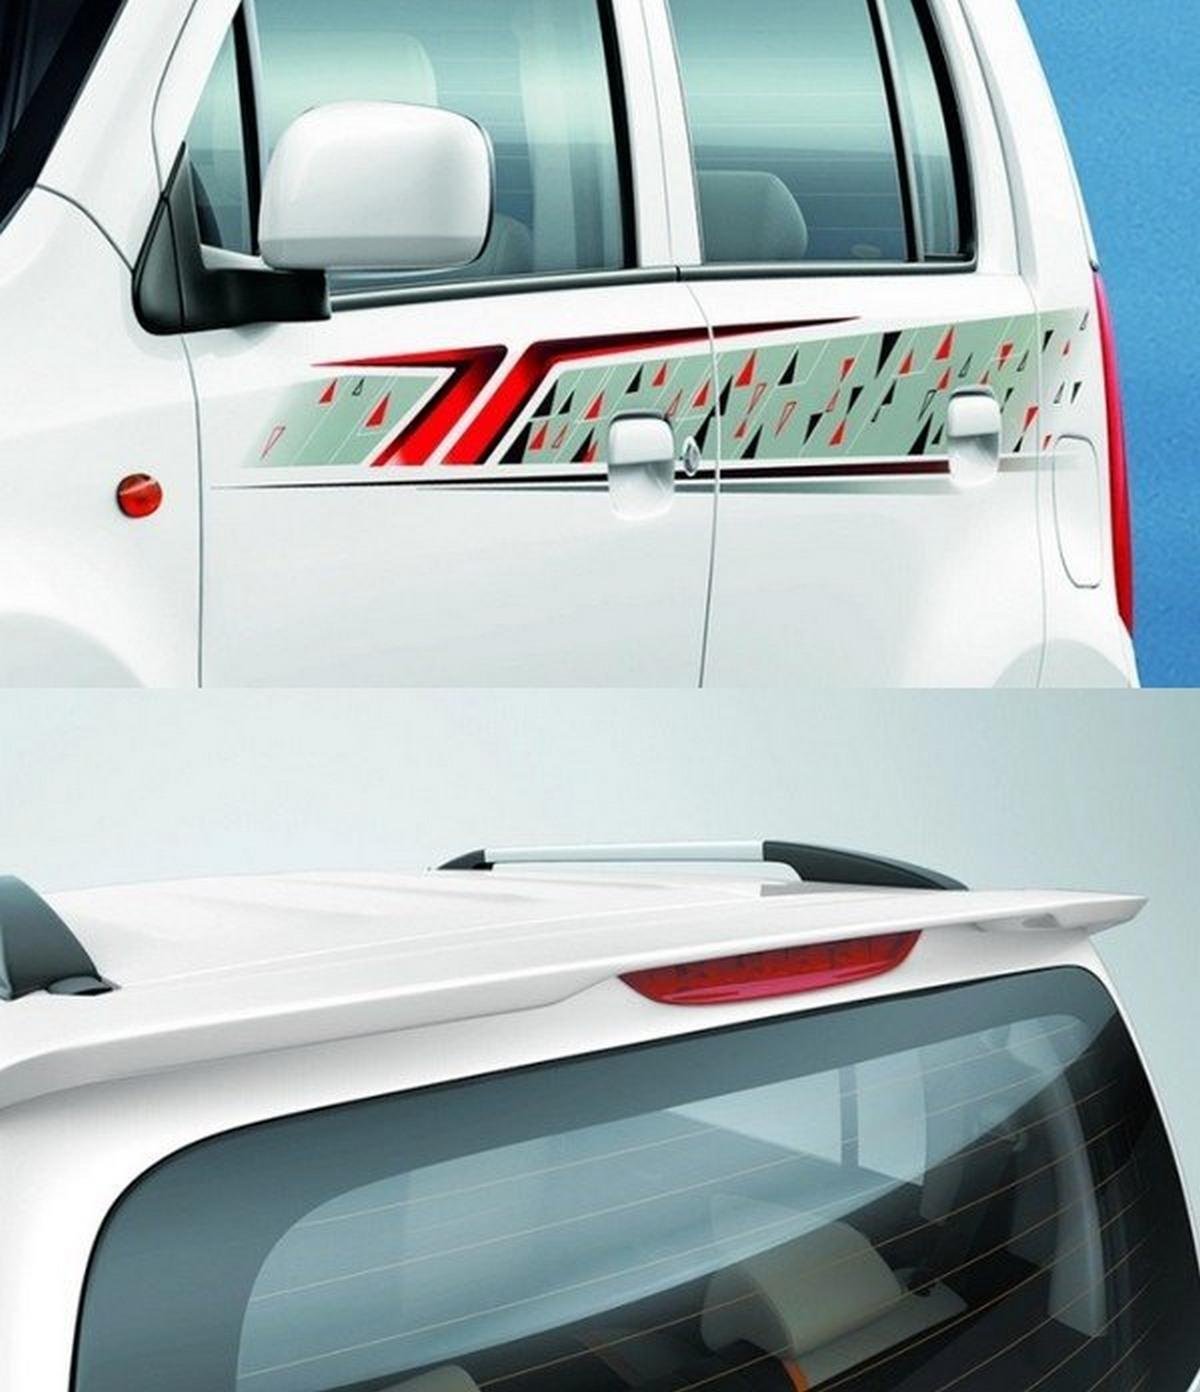  Maruti Suzuki WagonR limited edition body and rear spoiler